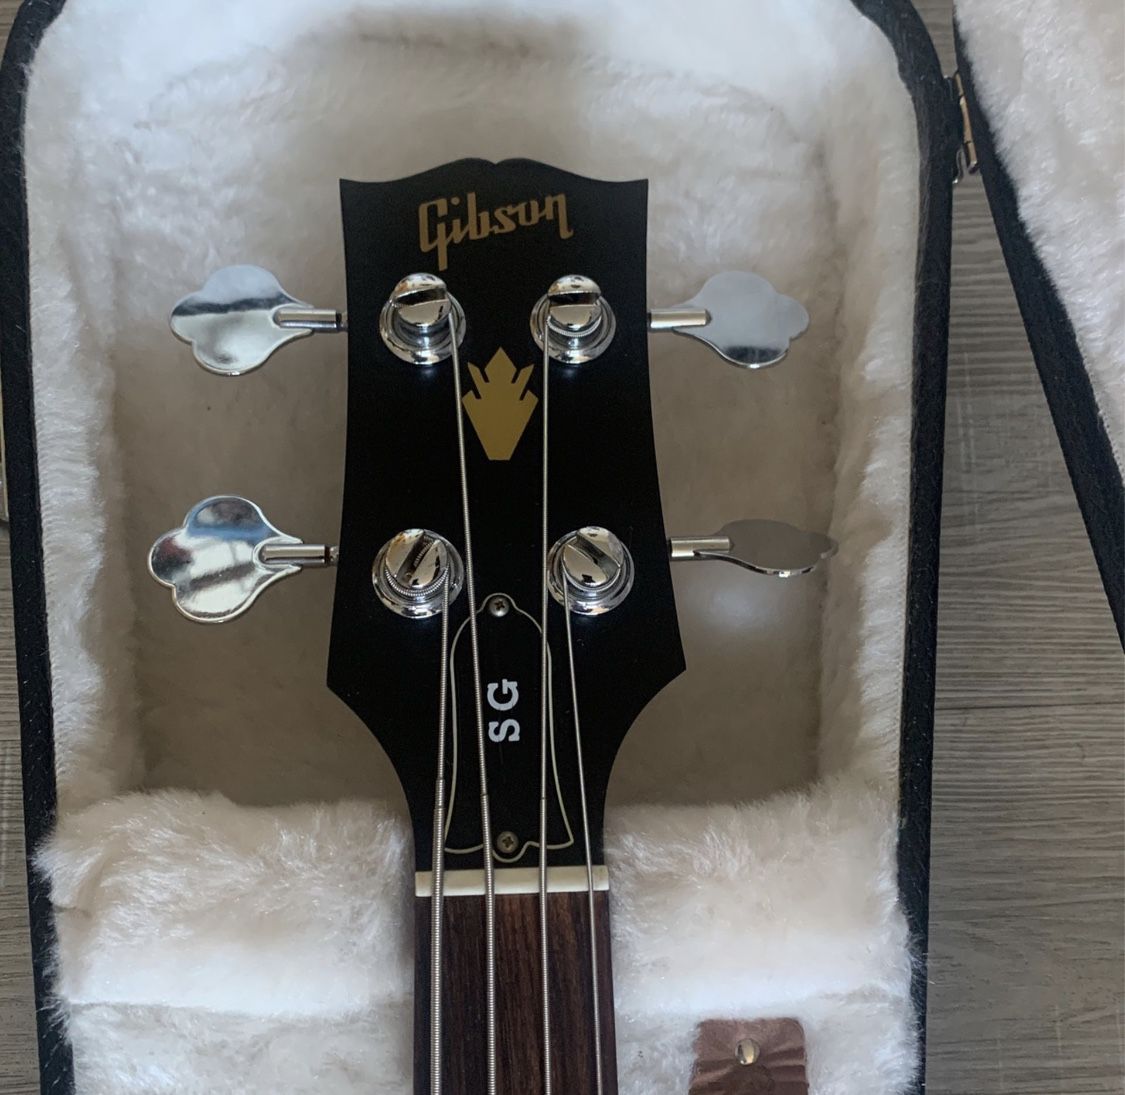 Gibson Bass 